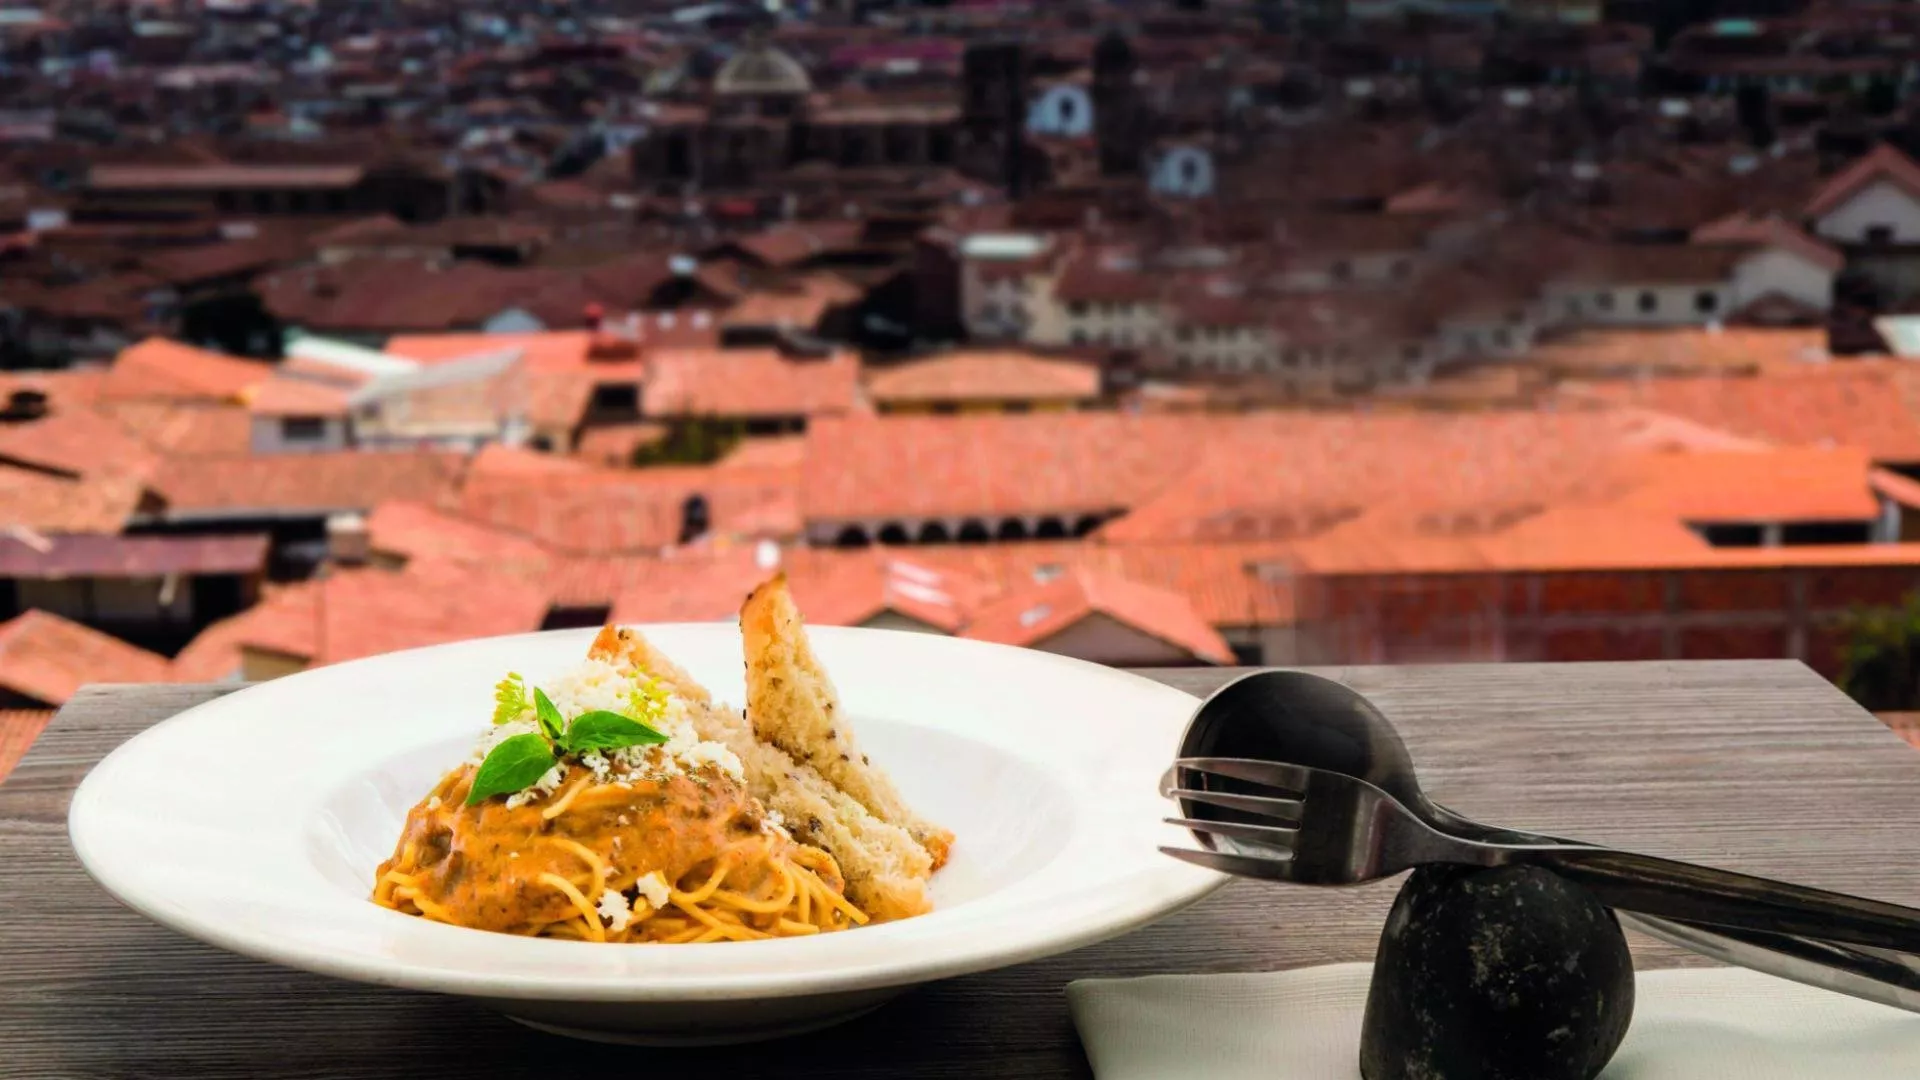 وجهات سفر في عيد الفطر 2019: غامري في جبال البيرو وتذوقي مأكولاتها الفريدة في مدينة كوسكو